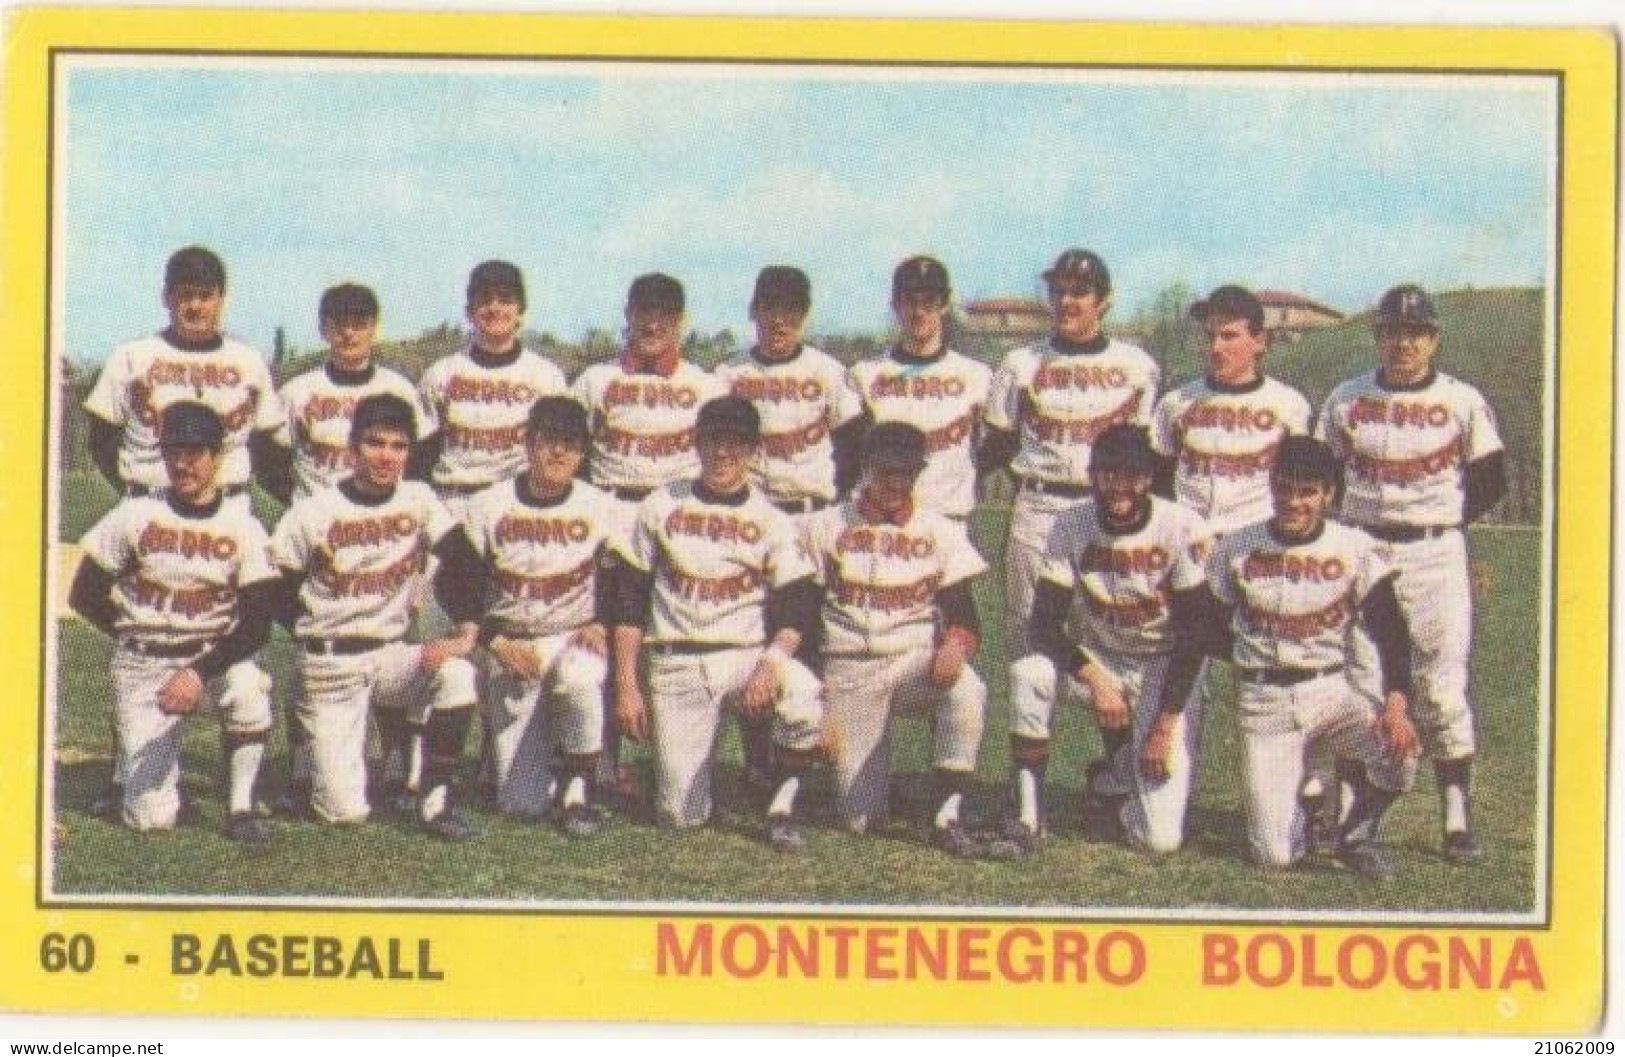 60 BASEBALL - SQUADRA MONTENEGRO BOLOGNA - CAMPIONI DELLO SPORT PANINI 1970-71 - Non Classés